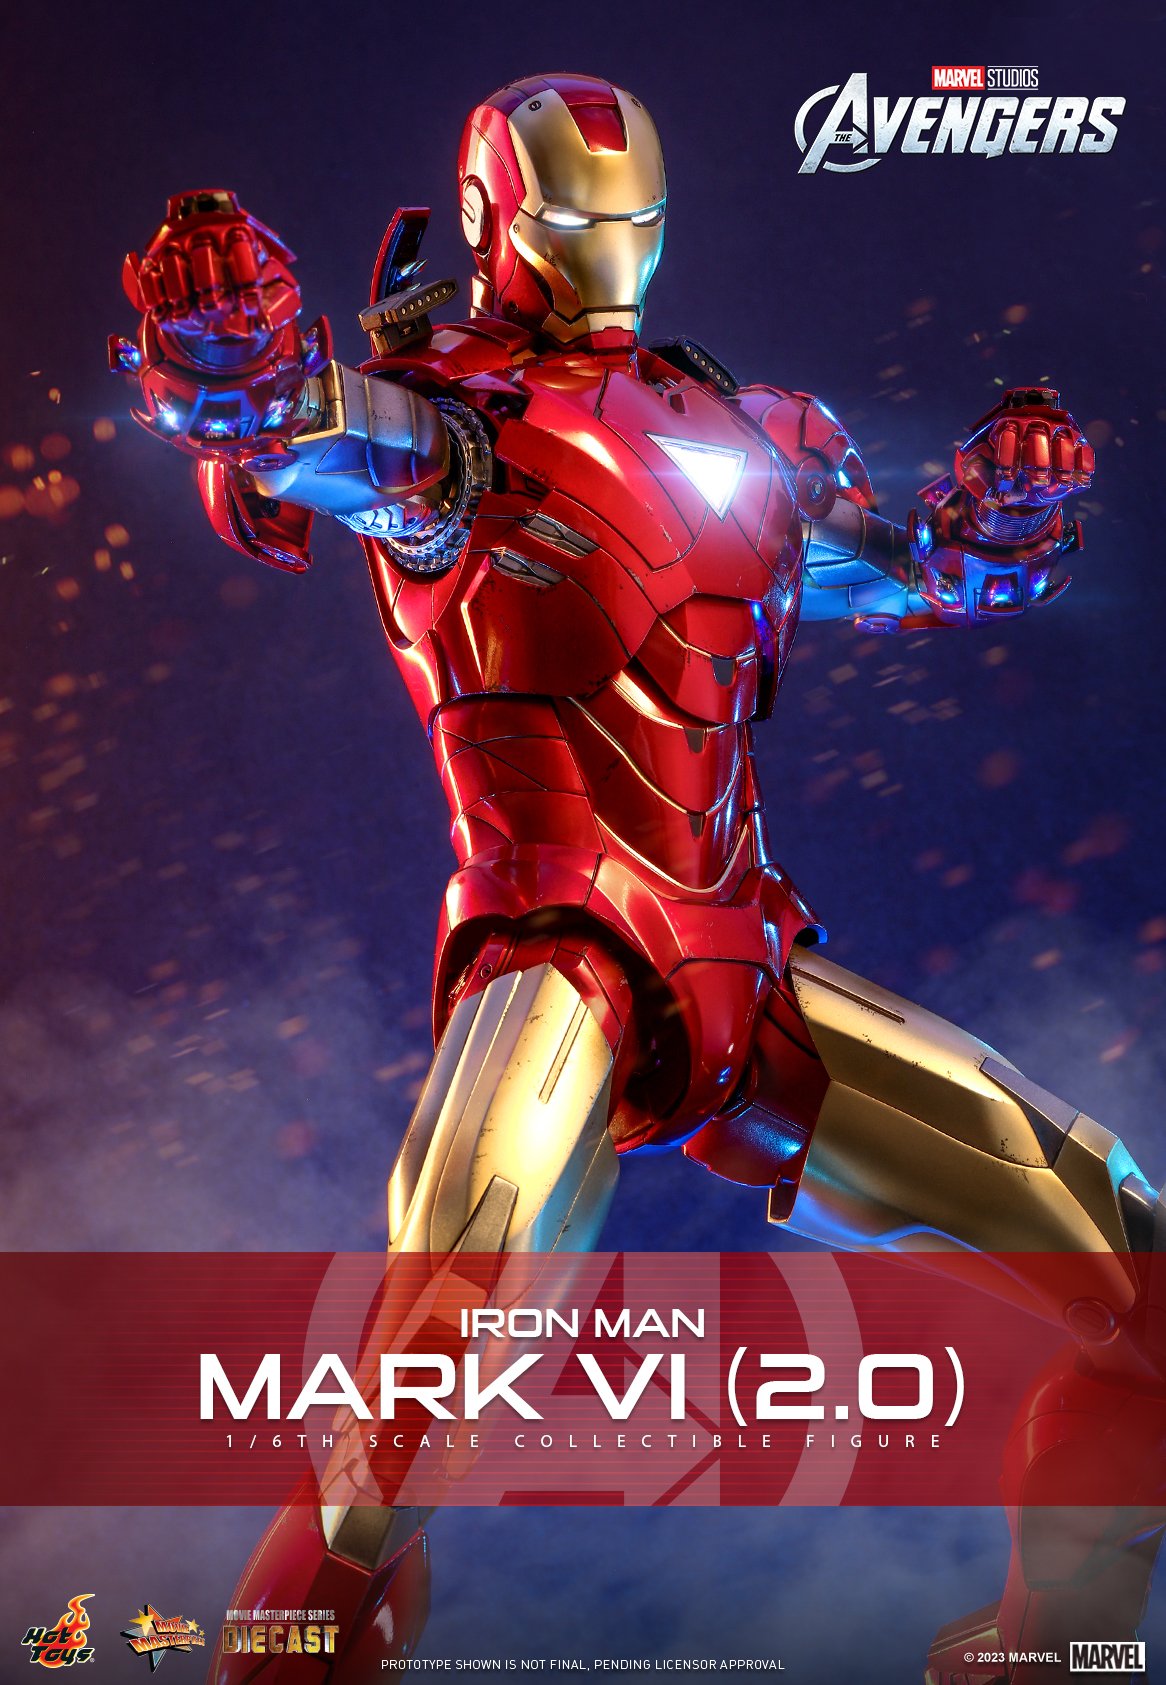 Hot Toys Iron Man Mark VI: Nếu bạn là fan của Iron Man, bạn sẽ không thể bỏ qua Hot Toys Iron Man Mark VI. Với đầy đủ tính năng và chi tiết đáng kinh ngạc, chiếc đồ chơi này sẽ làm bạn cảm thấy như được sở hữu một trong những bộ phim siêu anh hùng đỉnh nhất.